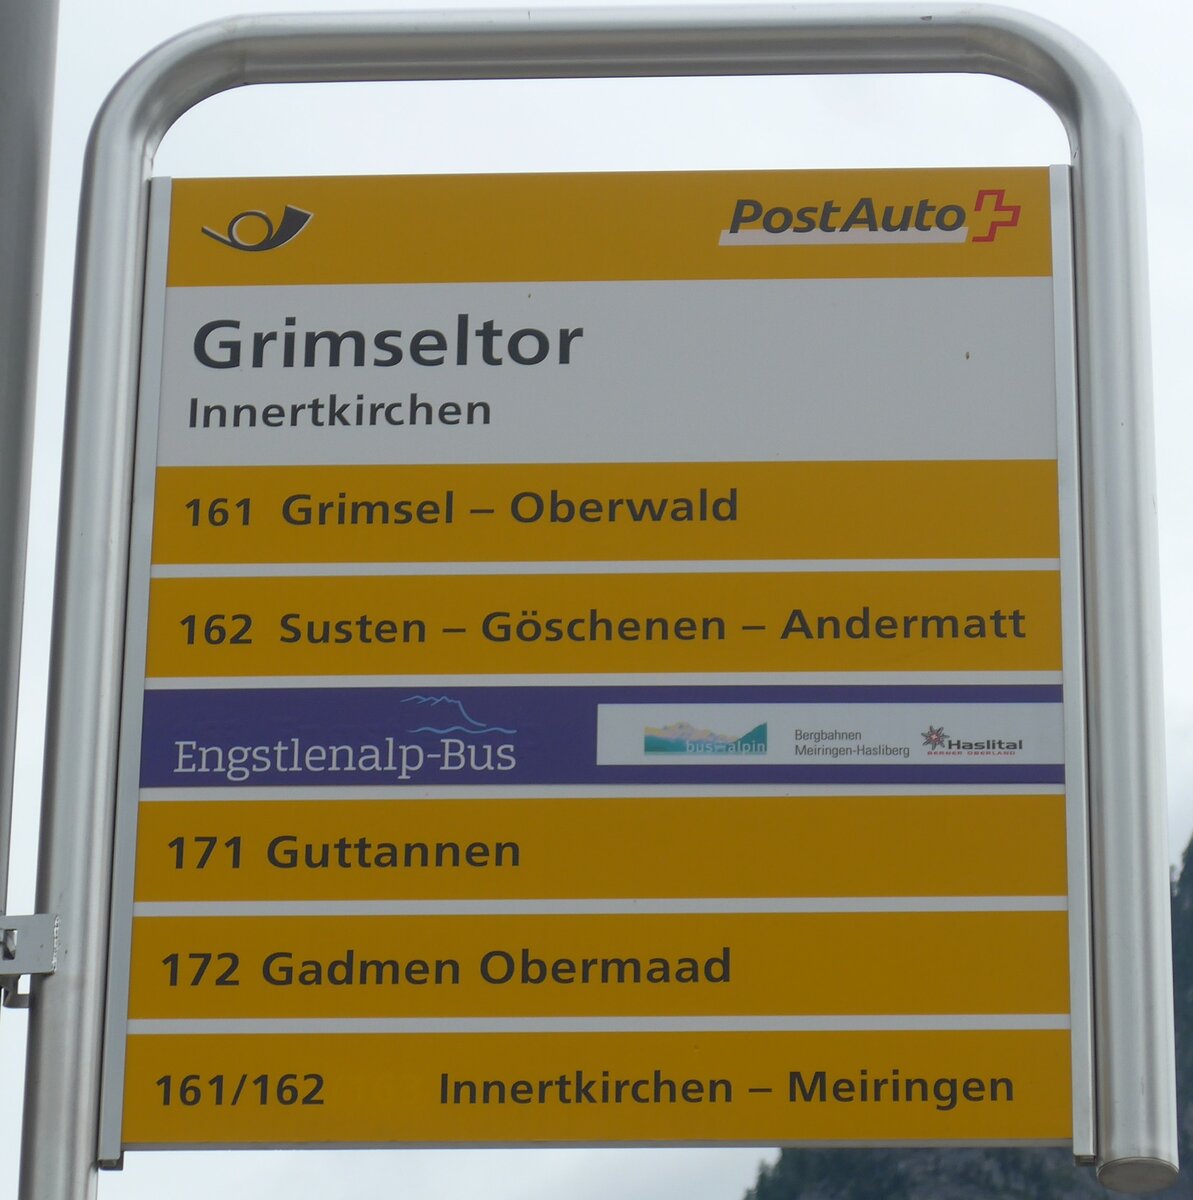 (194'982) - PostAuto/Engstlenalp-Bus-Haltestellenschild - Innertkirchen, Grimseltor - am 21. Juli 2018